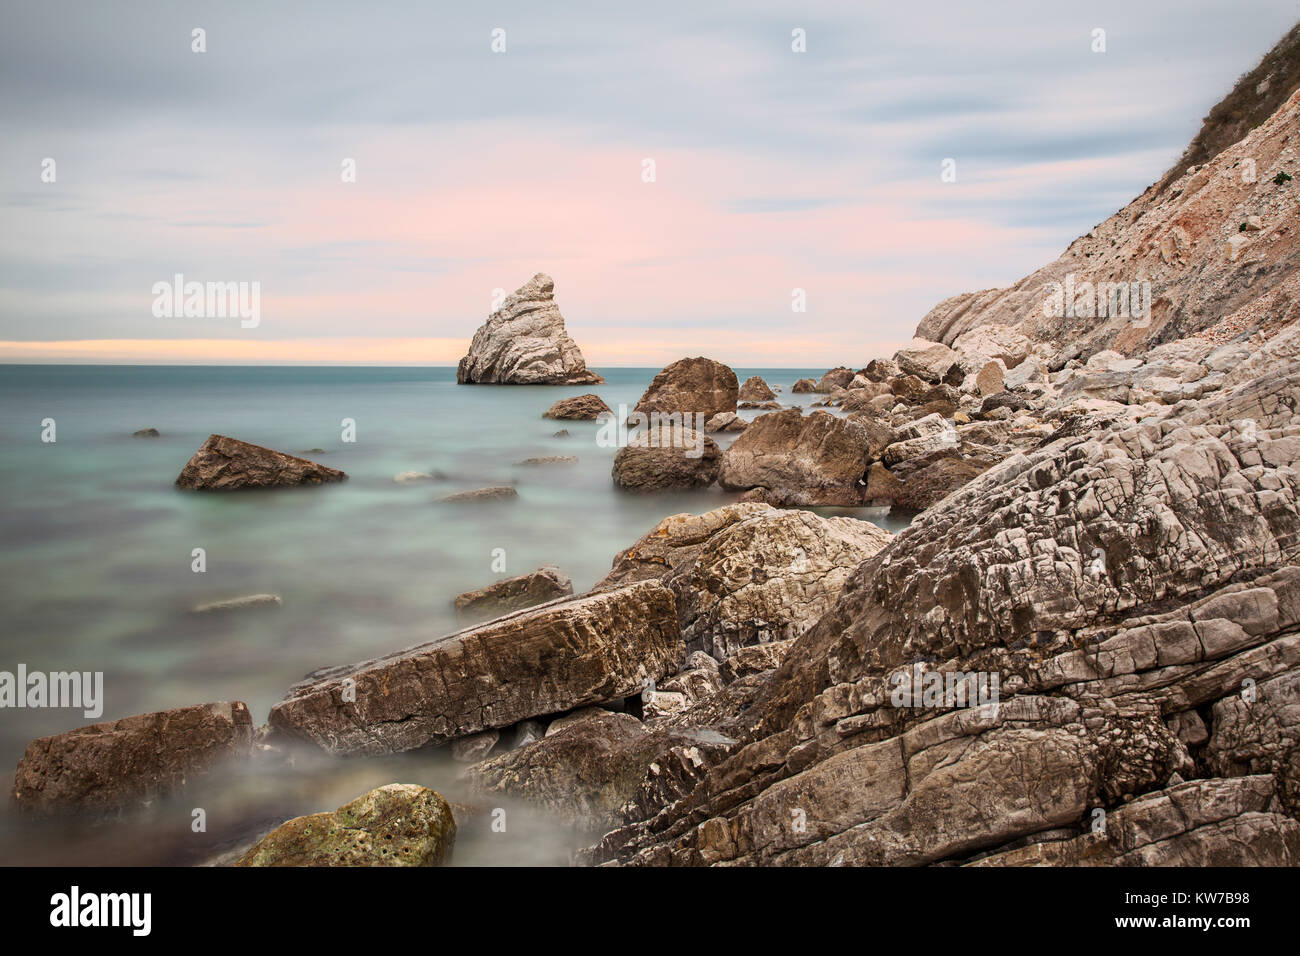 La Vela cliff in Portonovo beach, Conero Riviera, Ancona, Italy Stock Photo